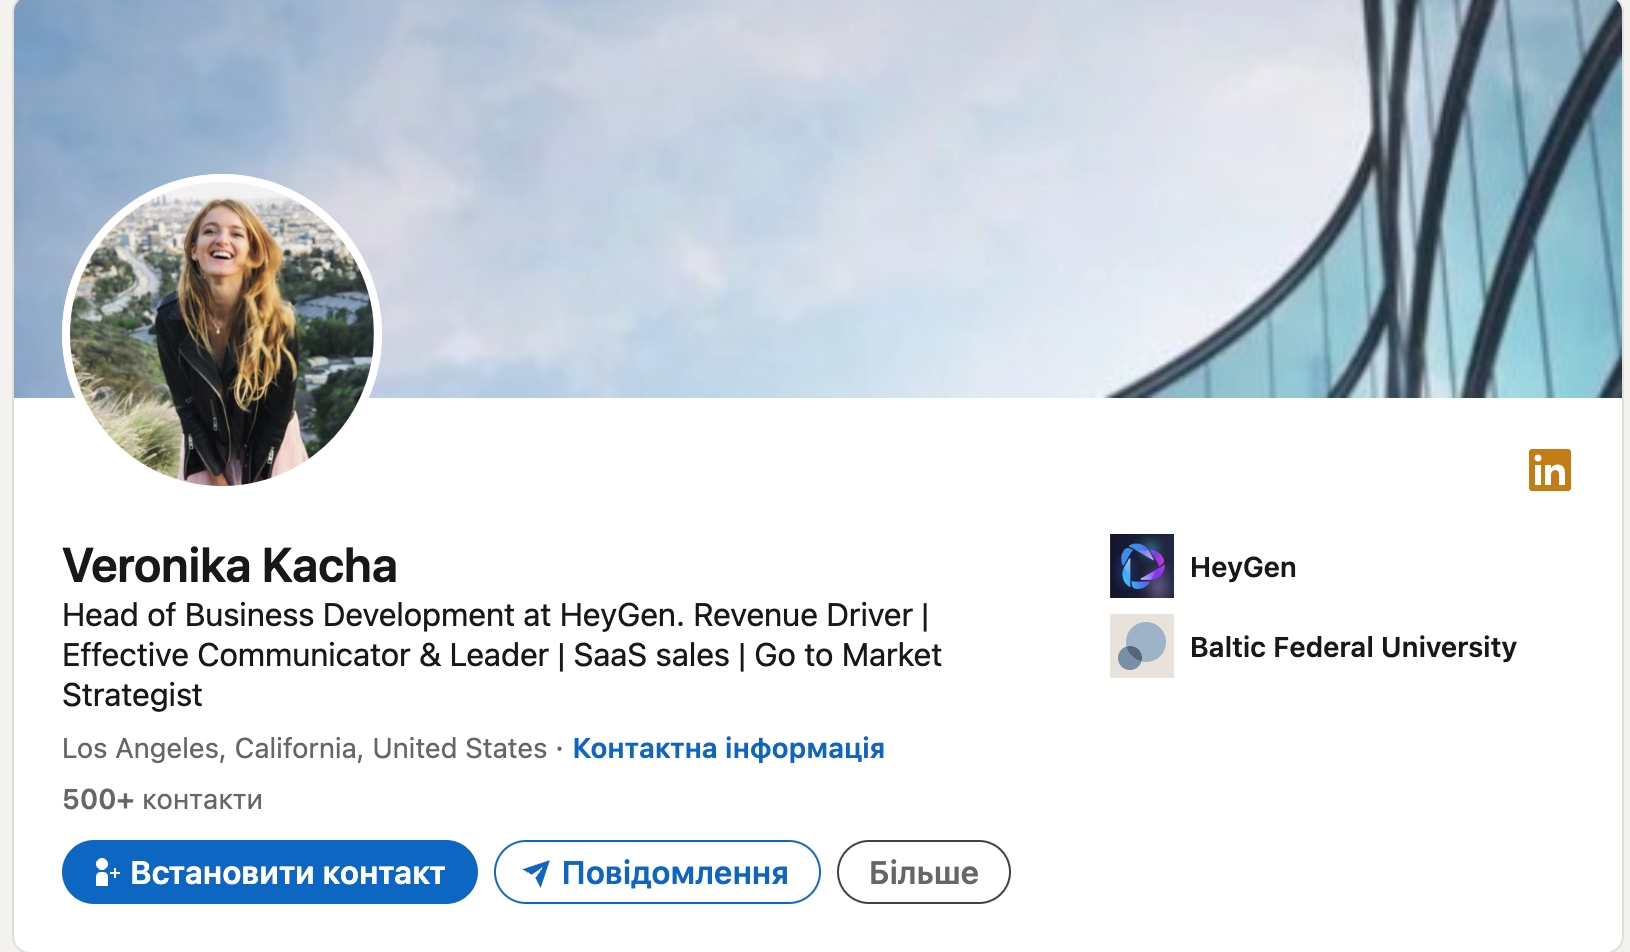 Сервіс HeyGen, який перекладає меми, заснували в Китаї, серед керівників – росіянка. Що треба знати